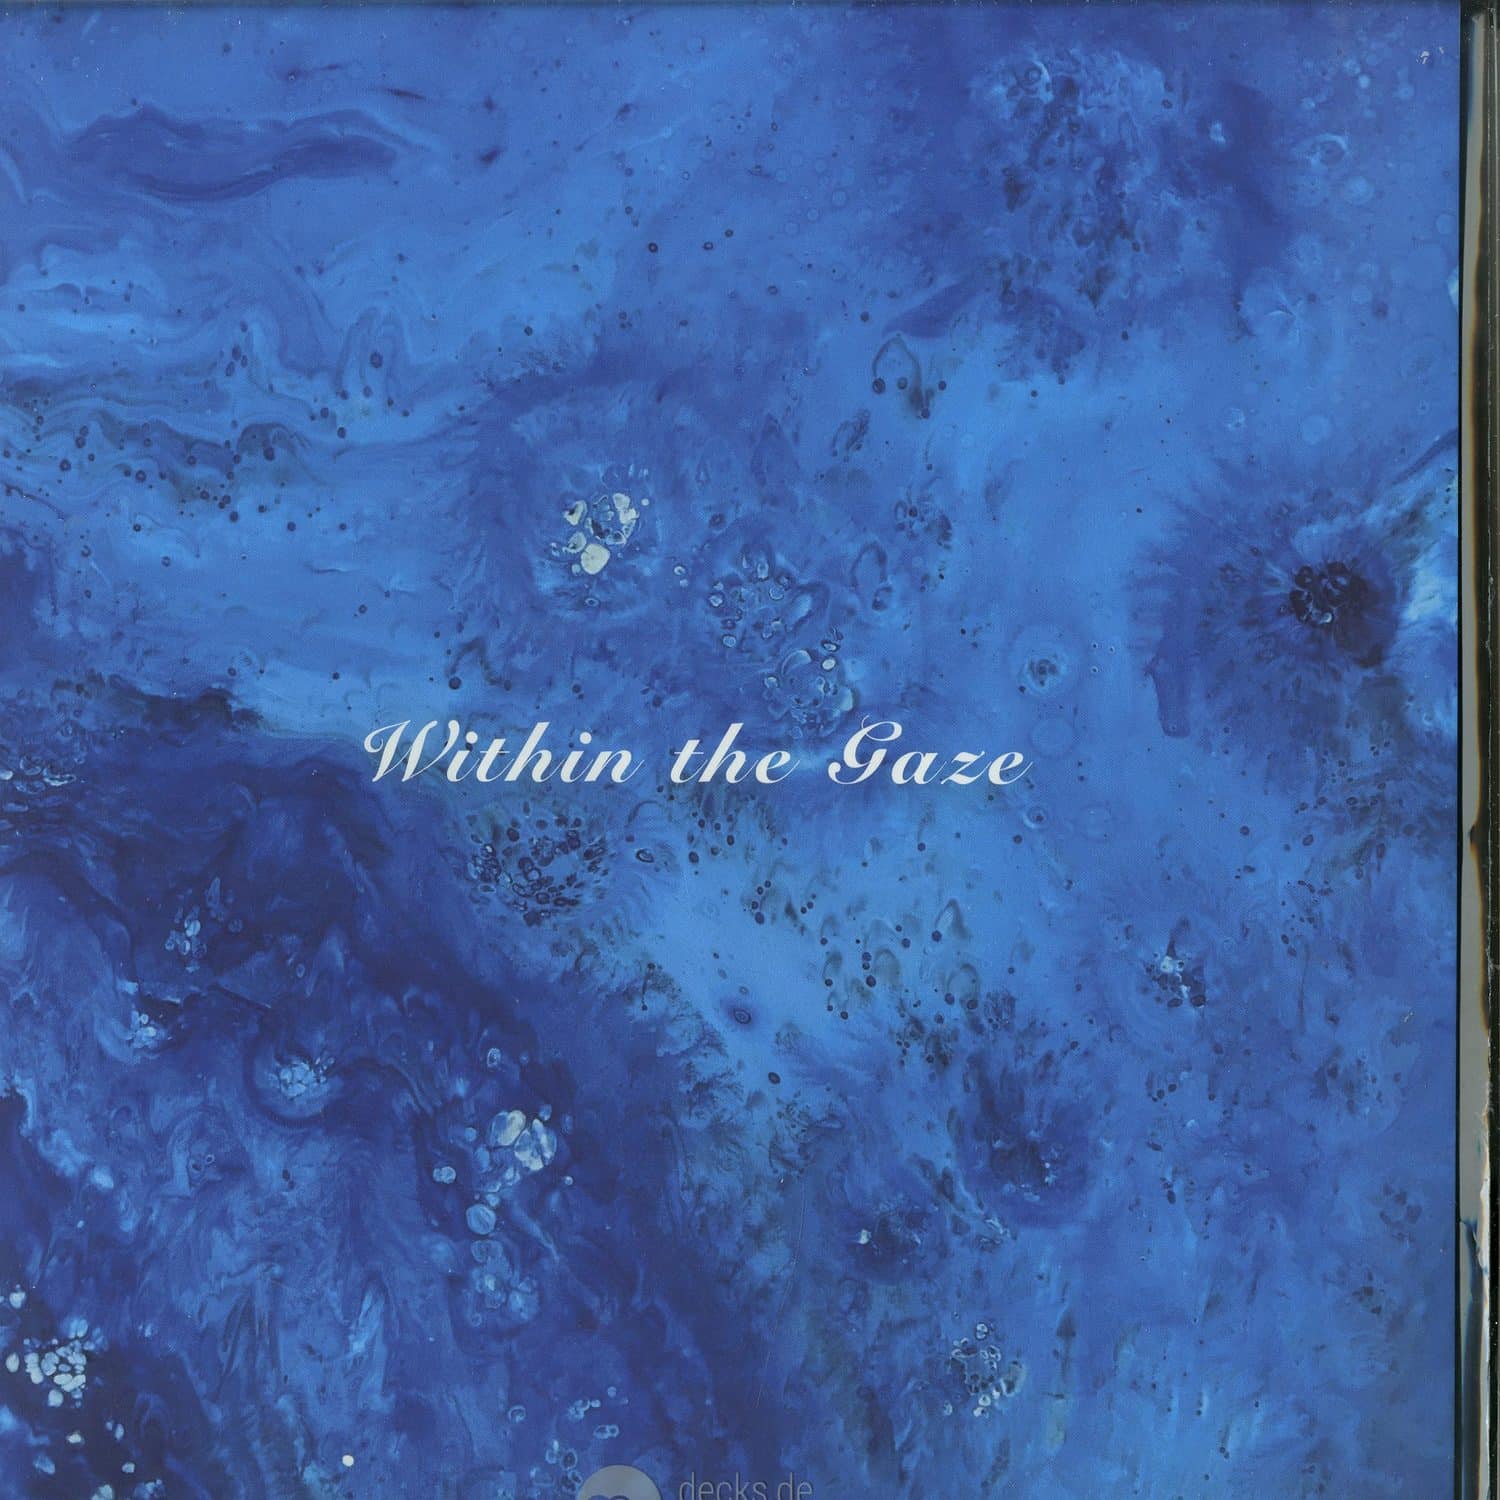 Imbue - WITHIN THE GAZE 